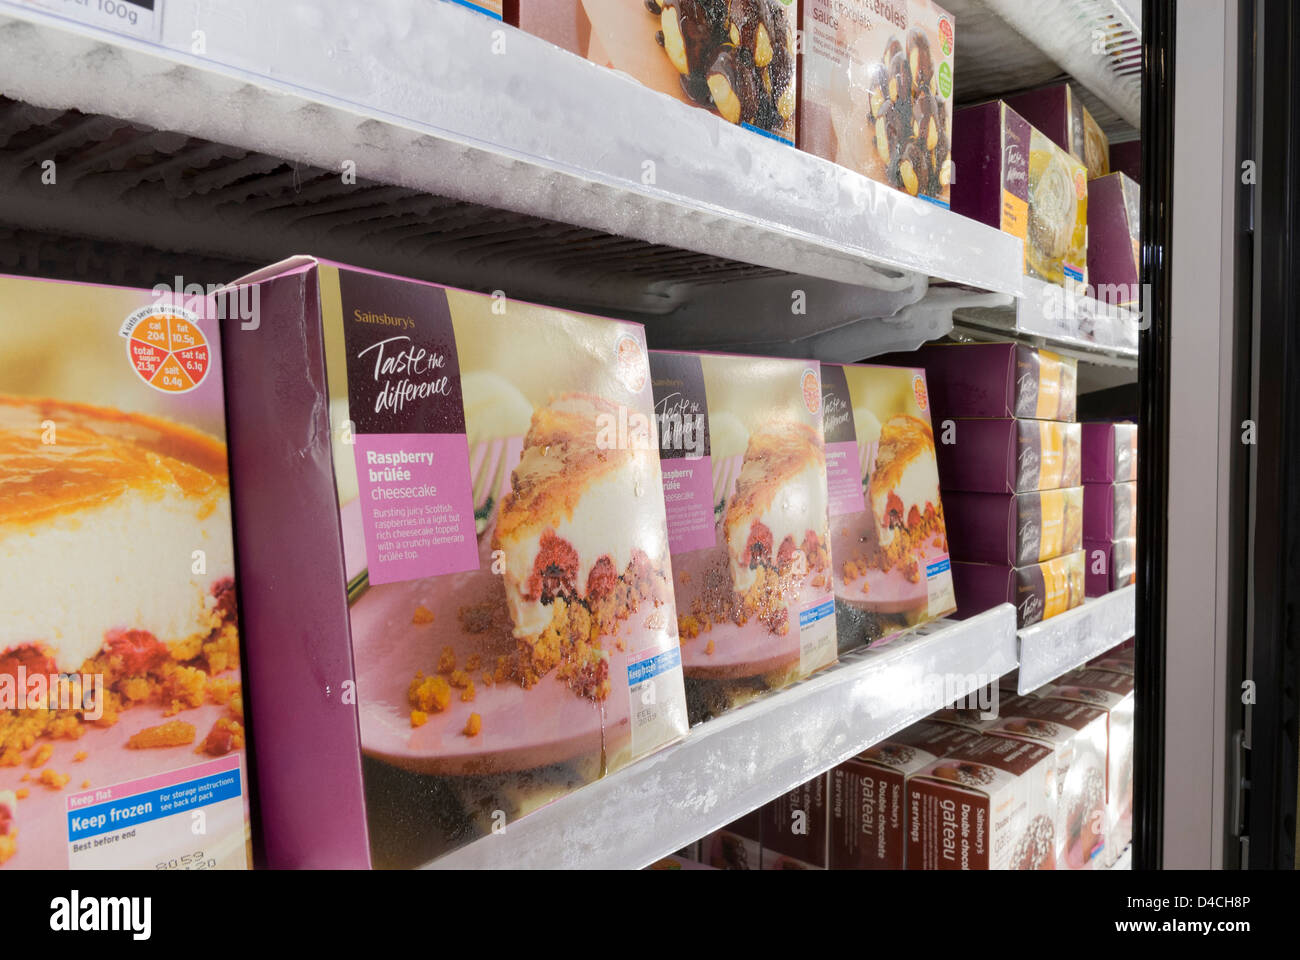 All'interno del supermercato Sainsbury congelatore espositore con 'gusto la differenza' prodotto Foto Stock